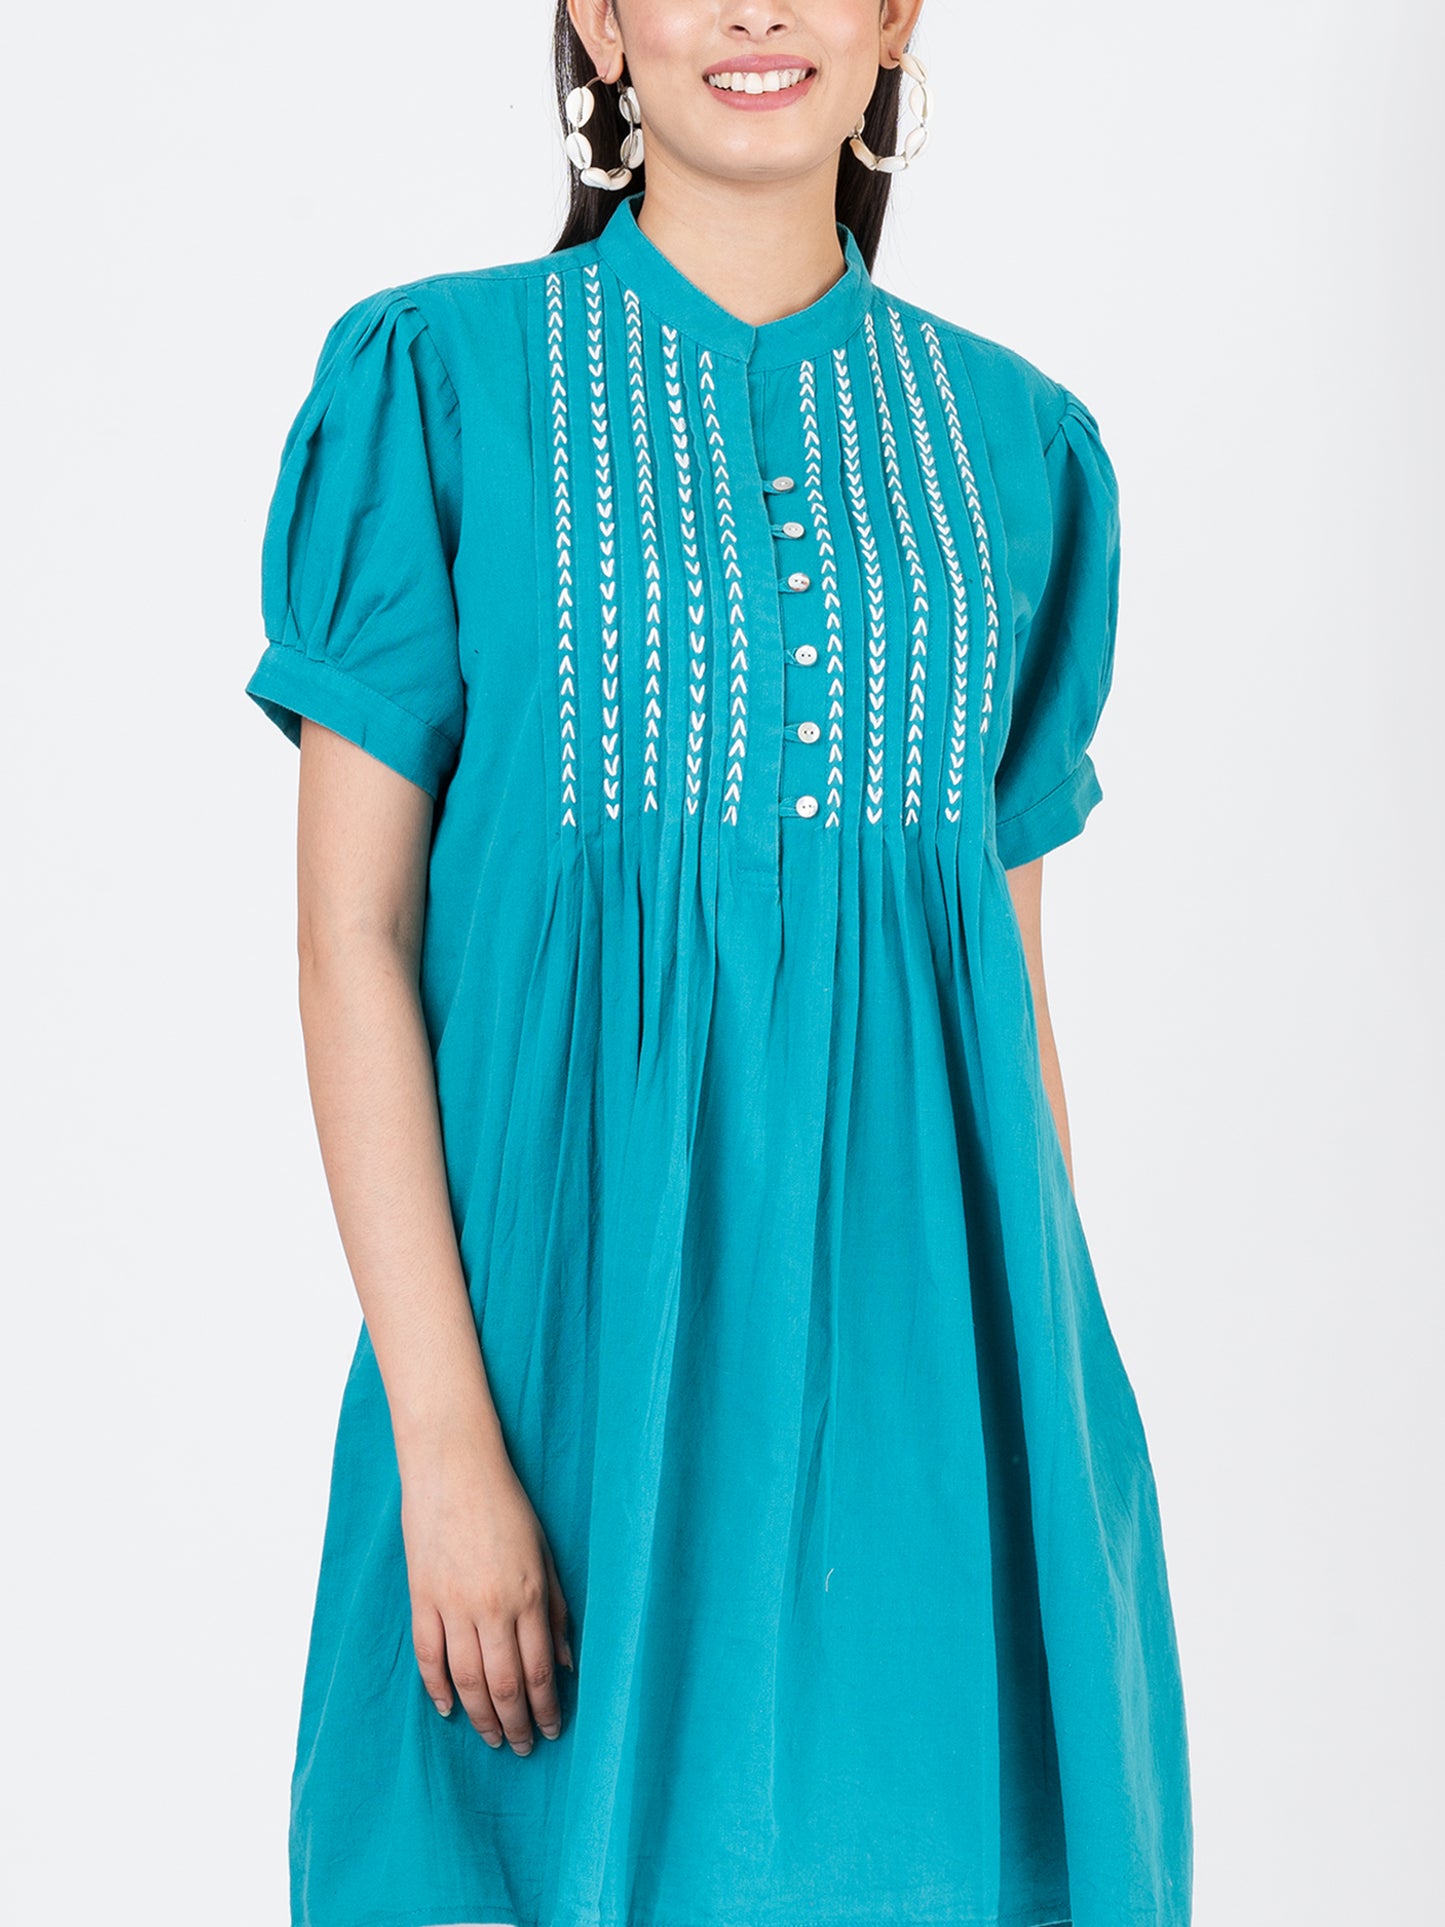 Women's Cotton Linen Summer Short Dress